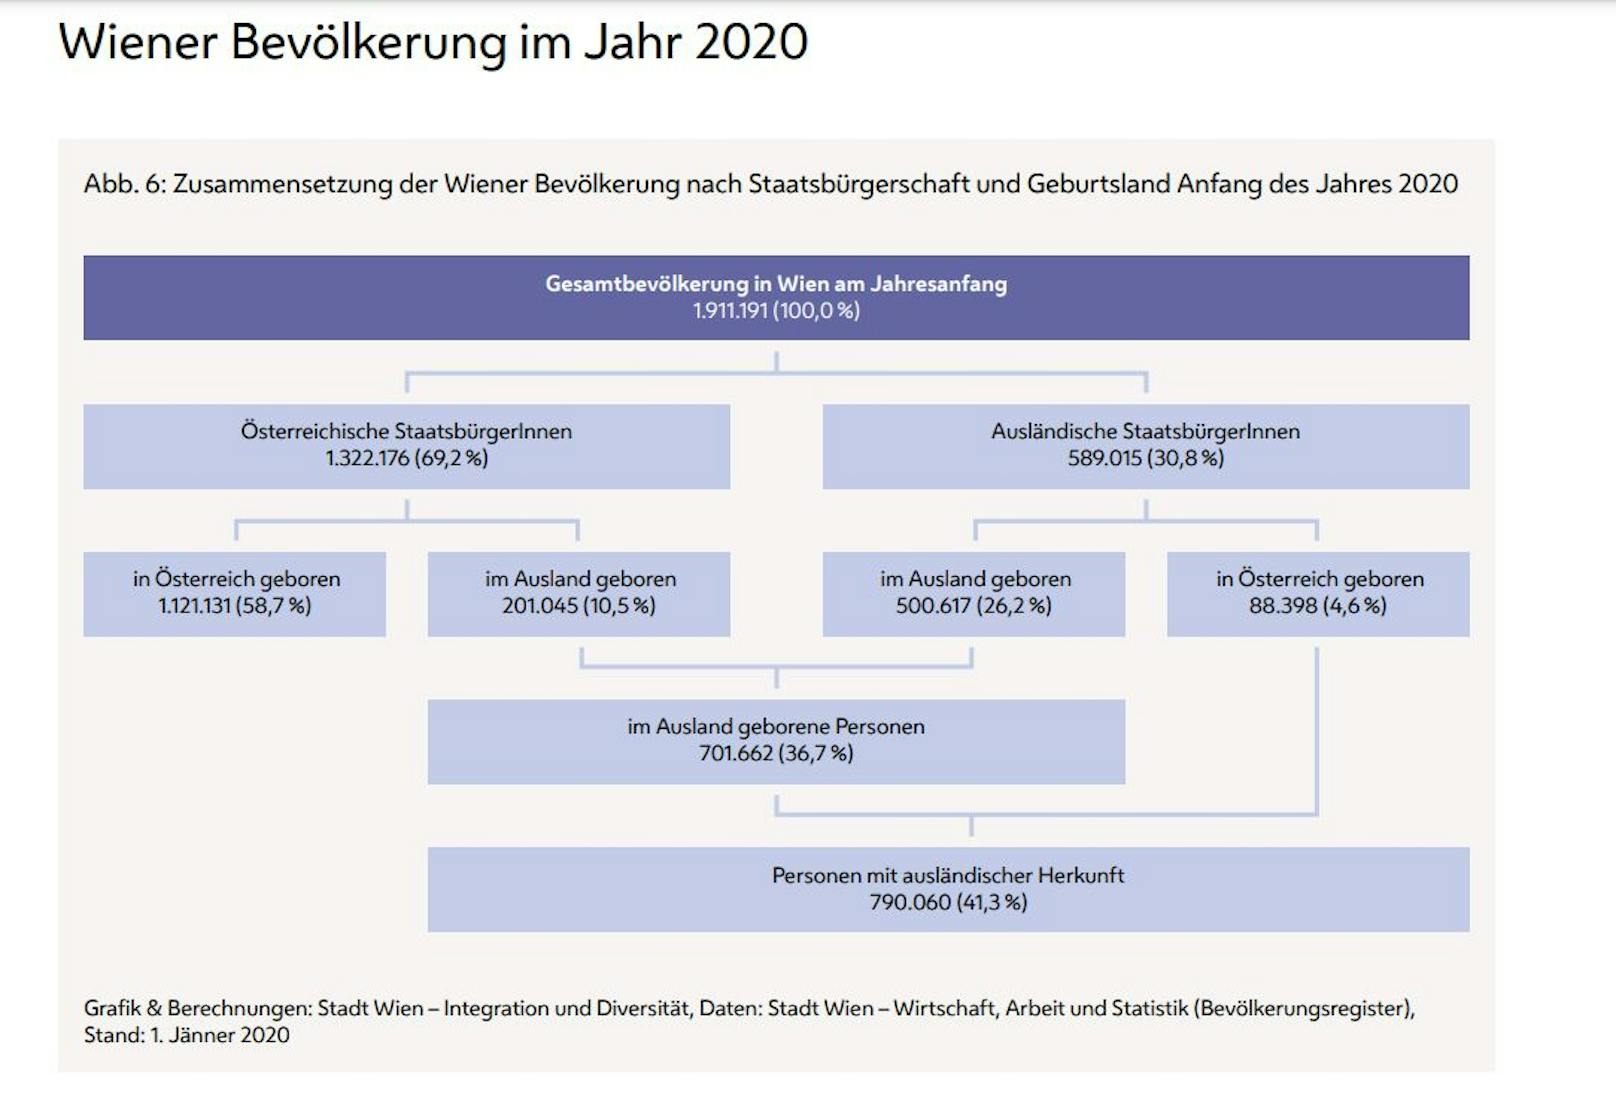 Zusammensetzung der Wiener Bevölkerung Anfang 2020